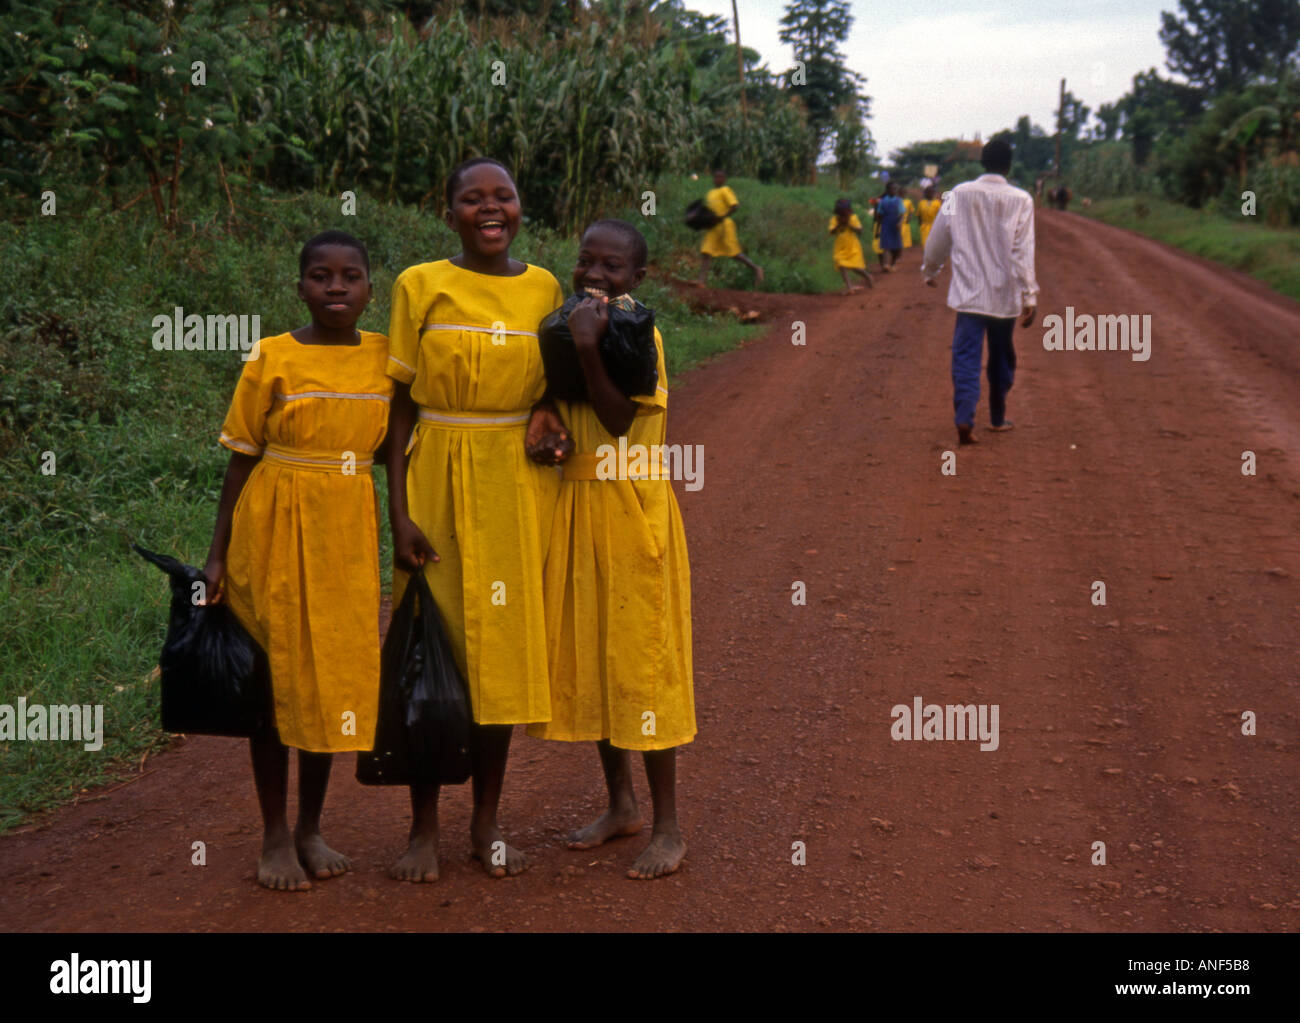 Groupe Portrait fille de l'école à pied aller à l'extérieur pose pied nu couleur uniforme jaune sac hold rire Mwanza Tanzanie Afrique de l'Est Banque D'Images